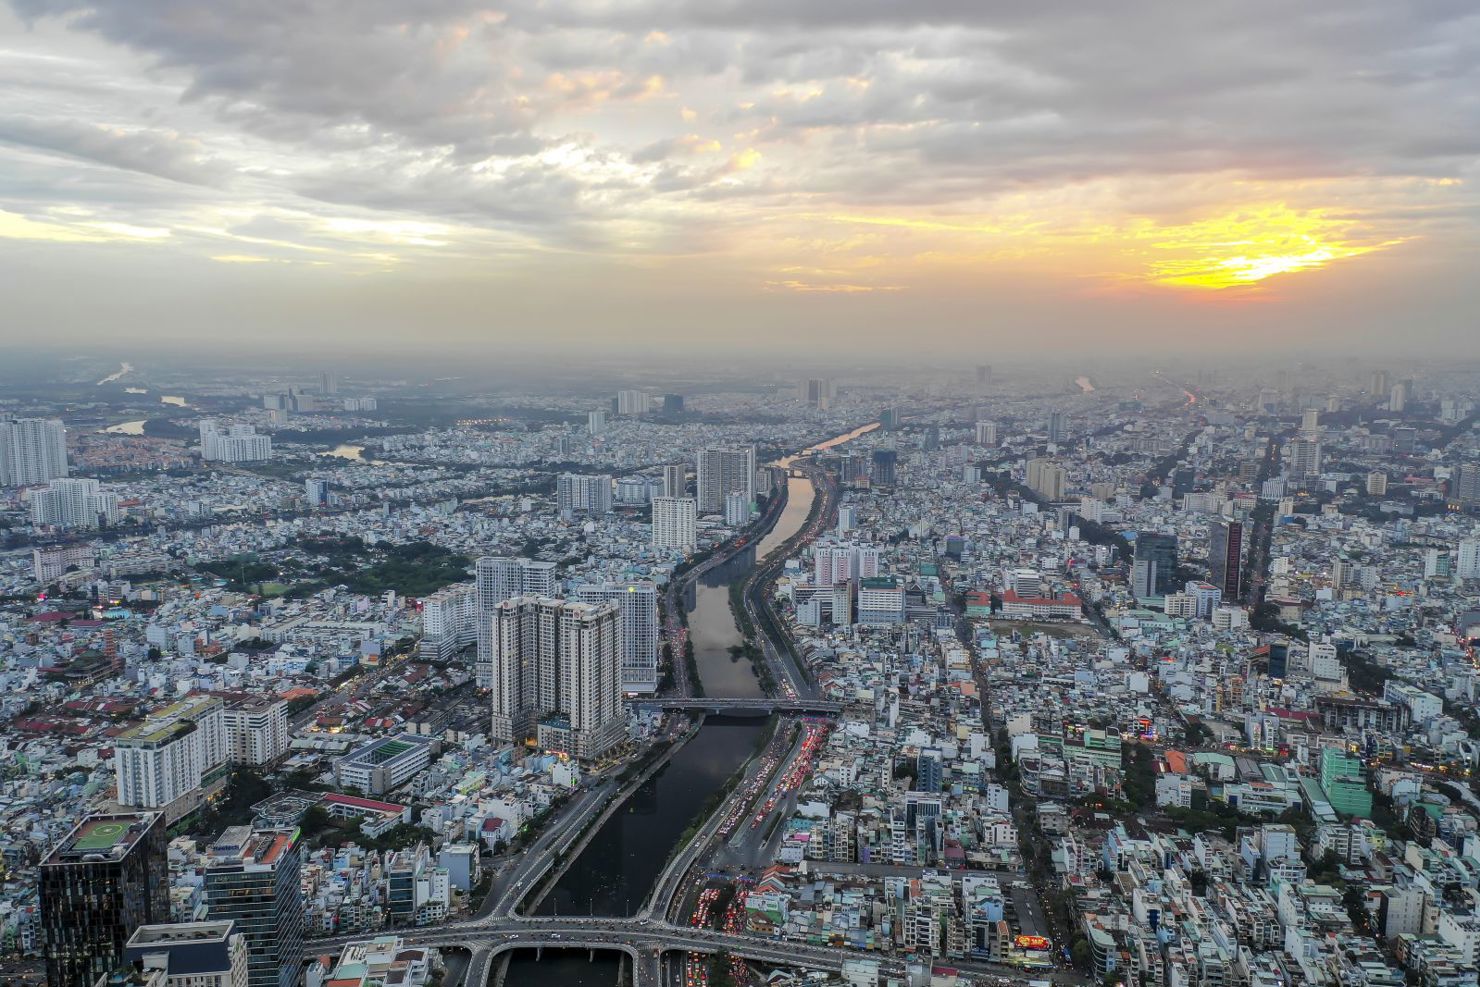 TP. Hồ Chí Minh: Nhiều phân khúc bất động sản có giá giảm nhưng giao dịch không tăng - Tạp chí Tài chính